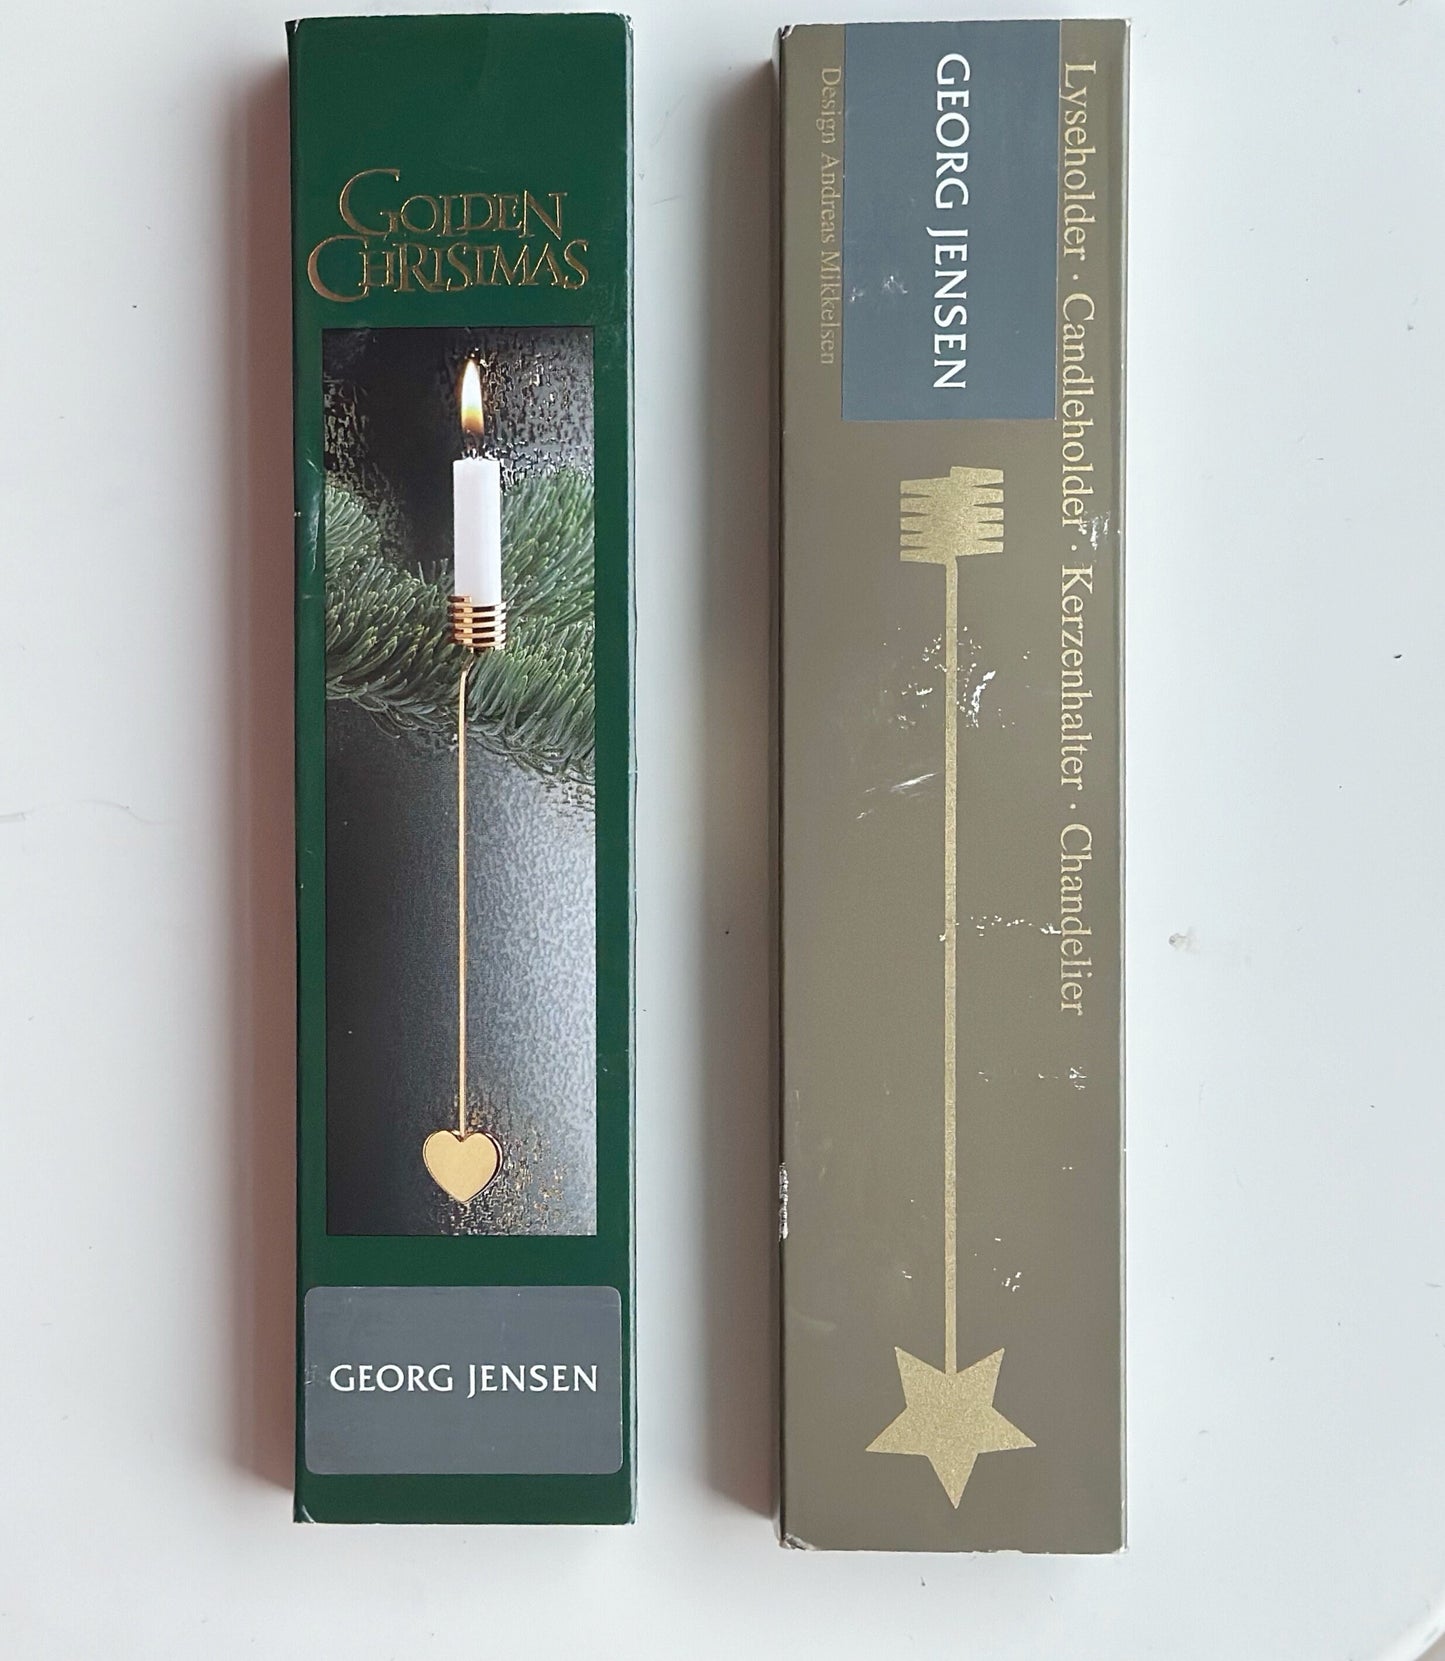 Georg Jensen Golden Christmas Candle Holder - Christmas Tree Design: Andreas Mikkelsen Danish Design